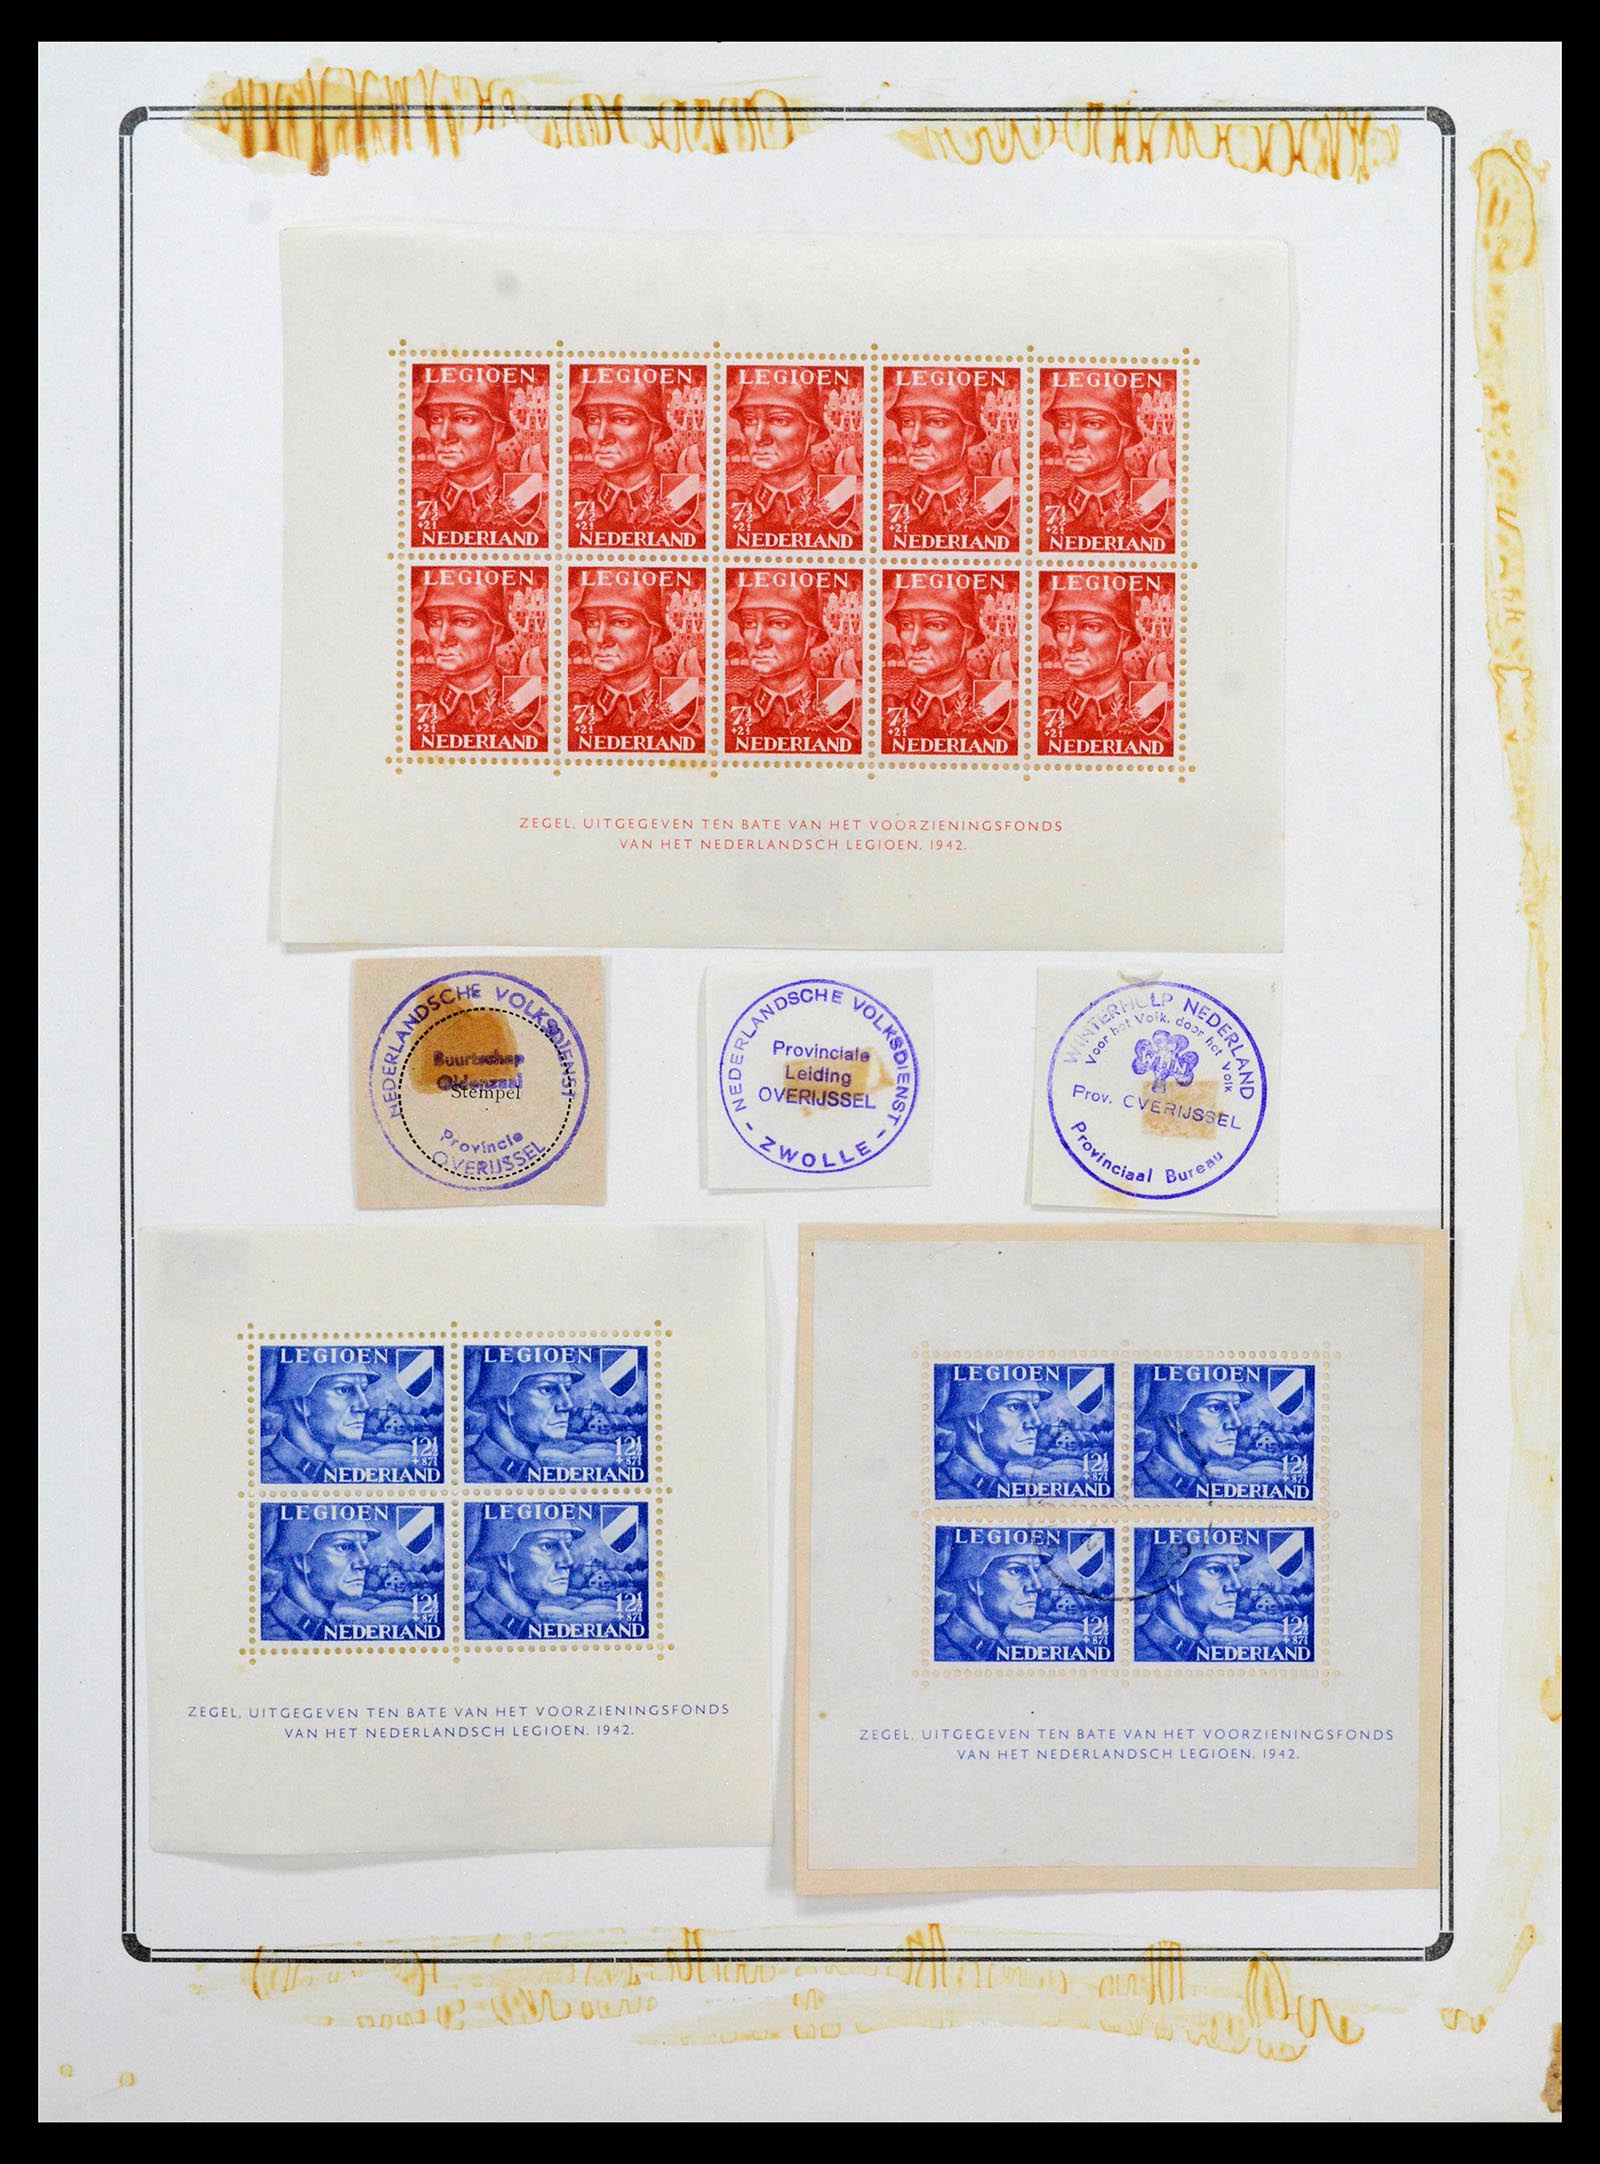 38865 0163 - Stamp collection 38865 German occupation 2nd worldwar 1939-1945.